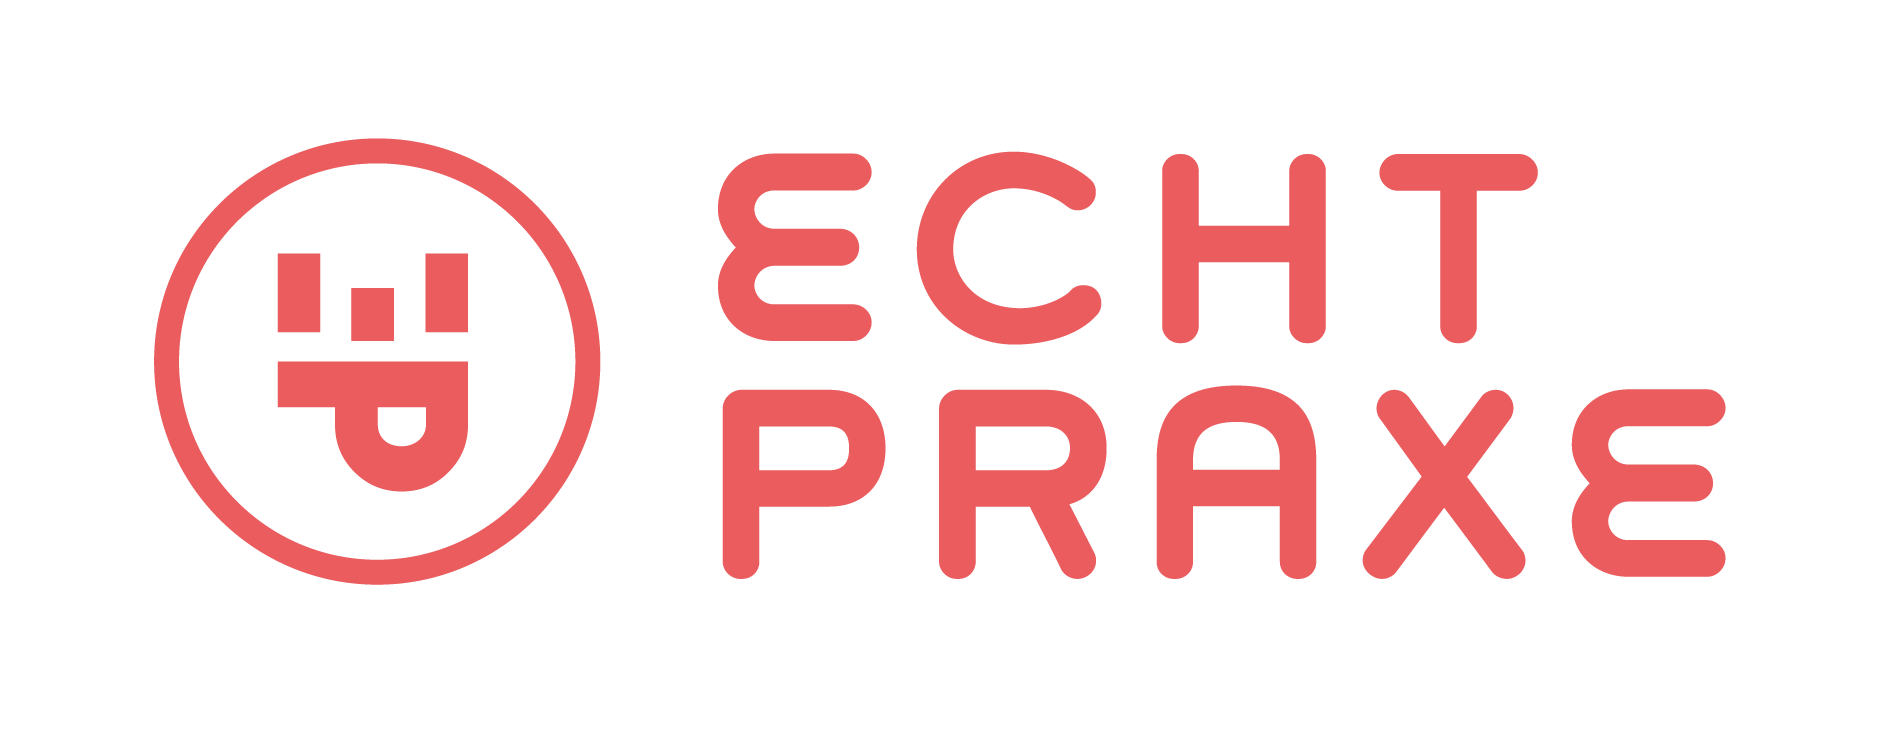 ECHT PRAXE - Týden otevřených dveří v německých a rakouských firmách 